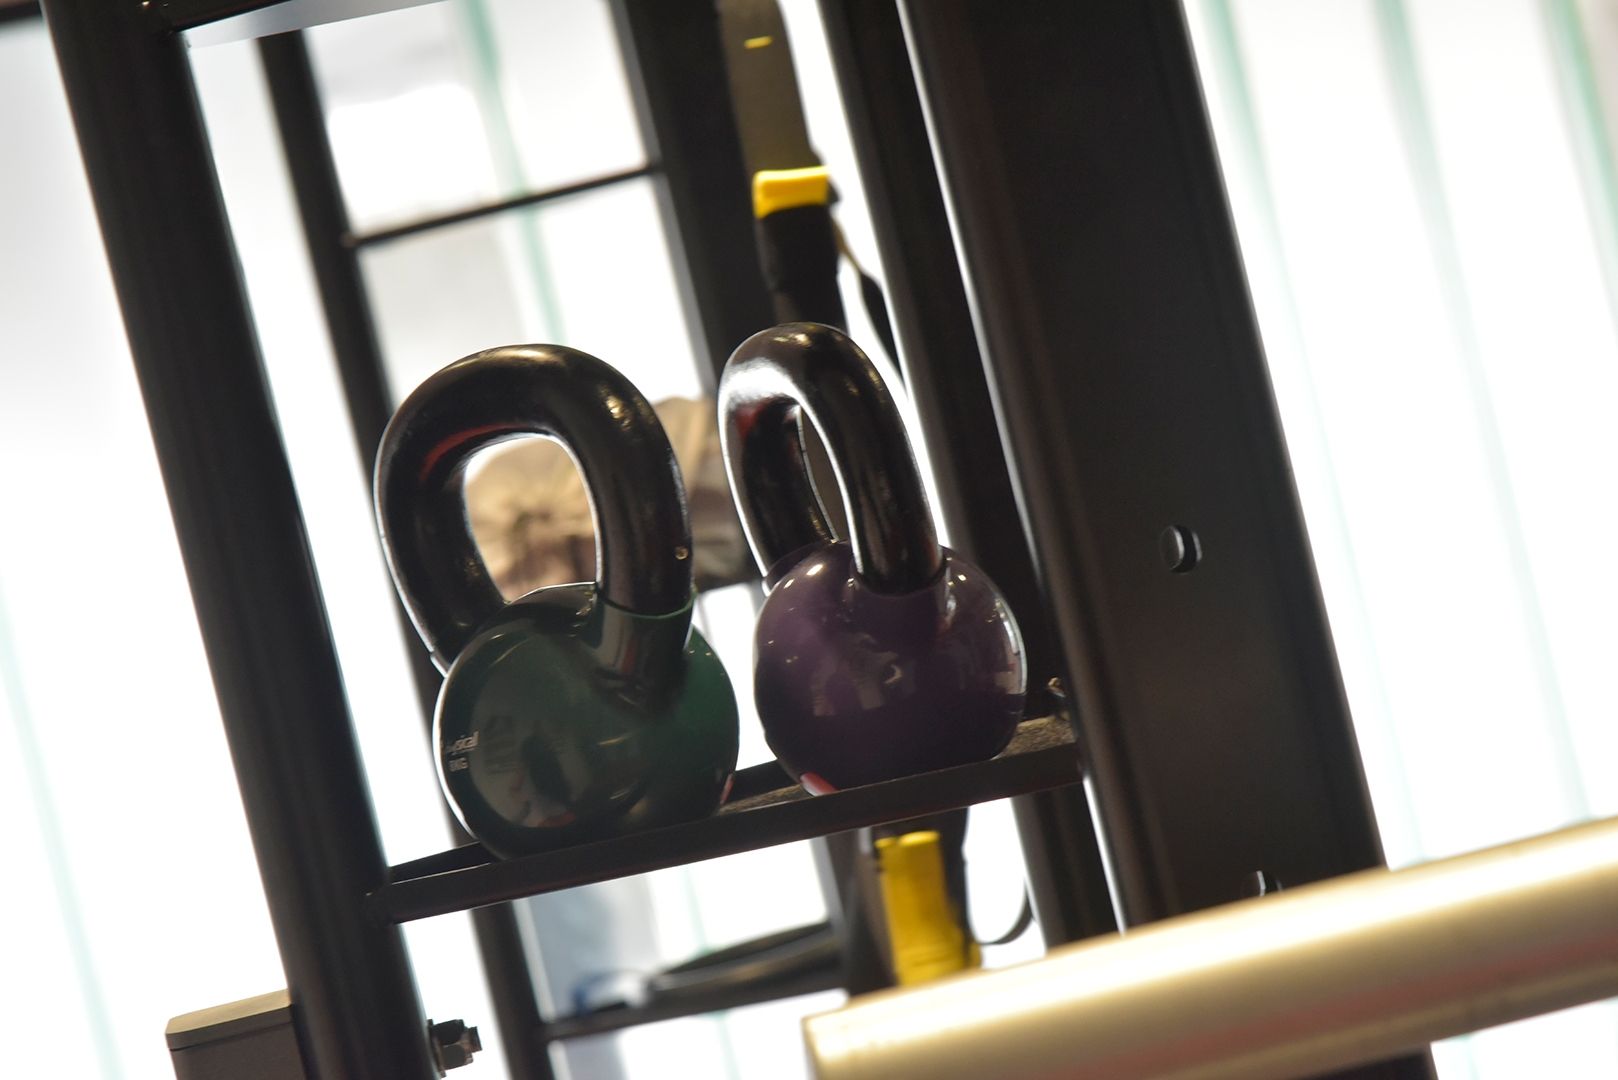 Gateway gym weights 